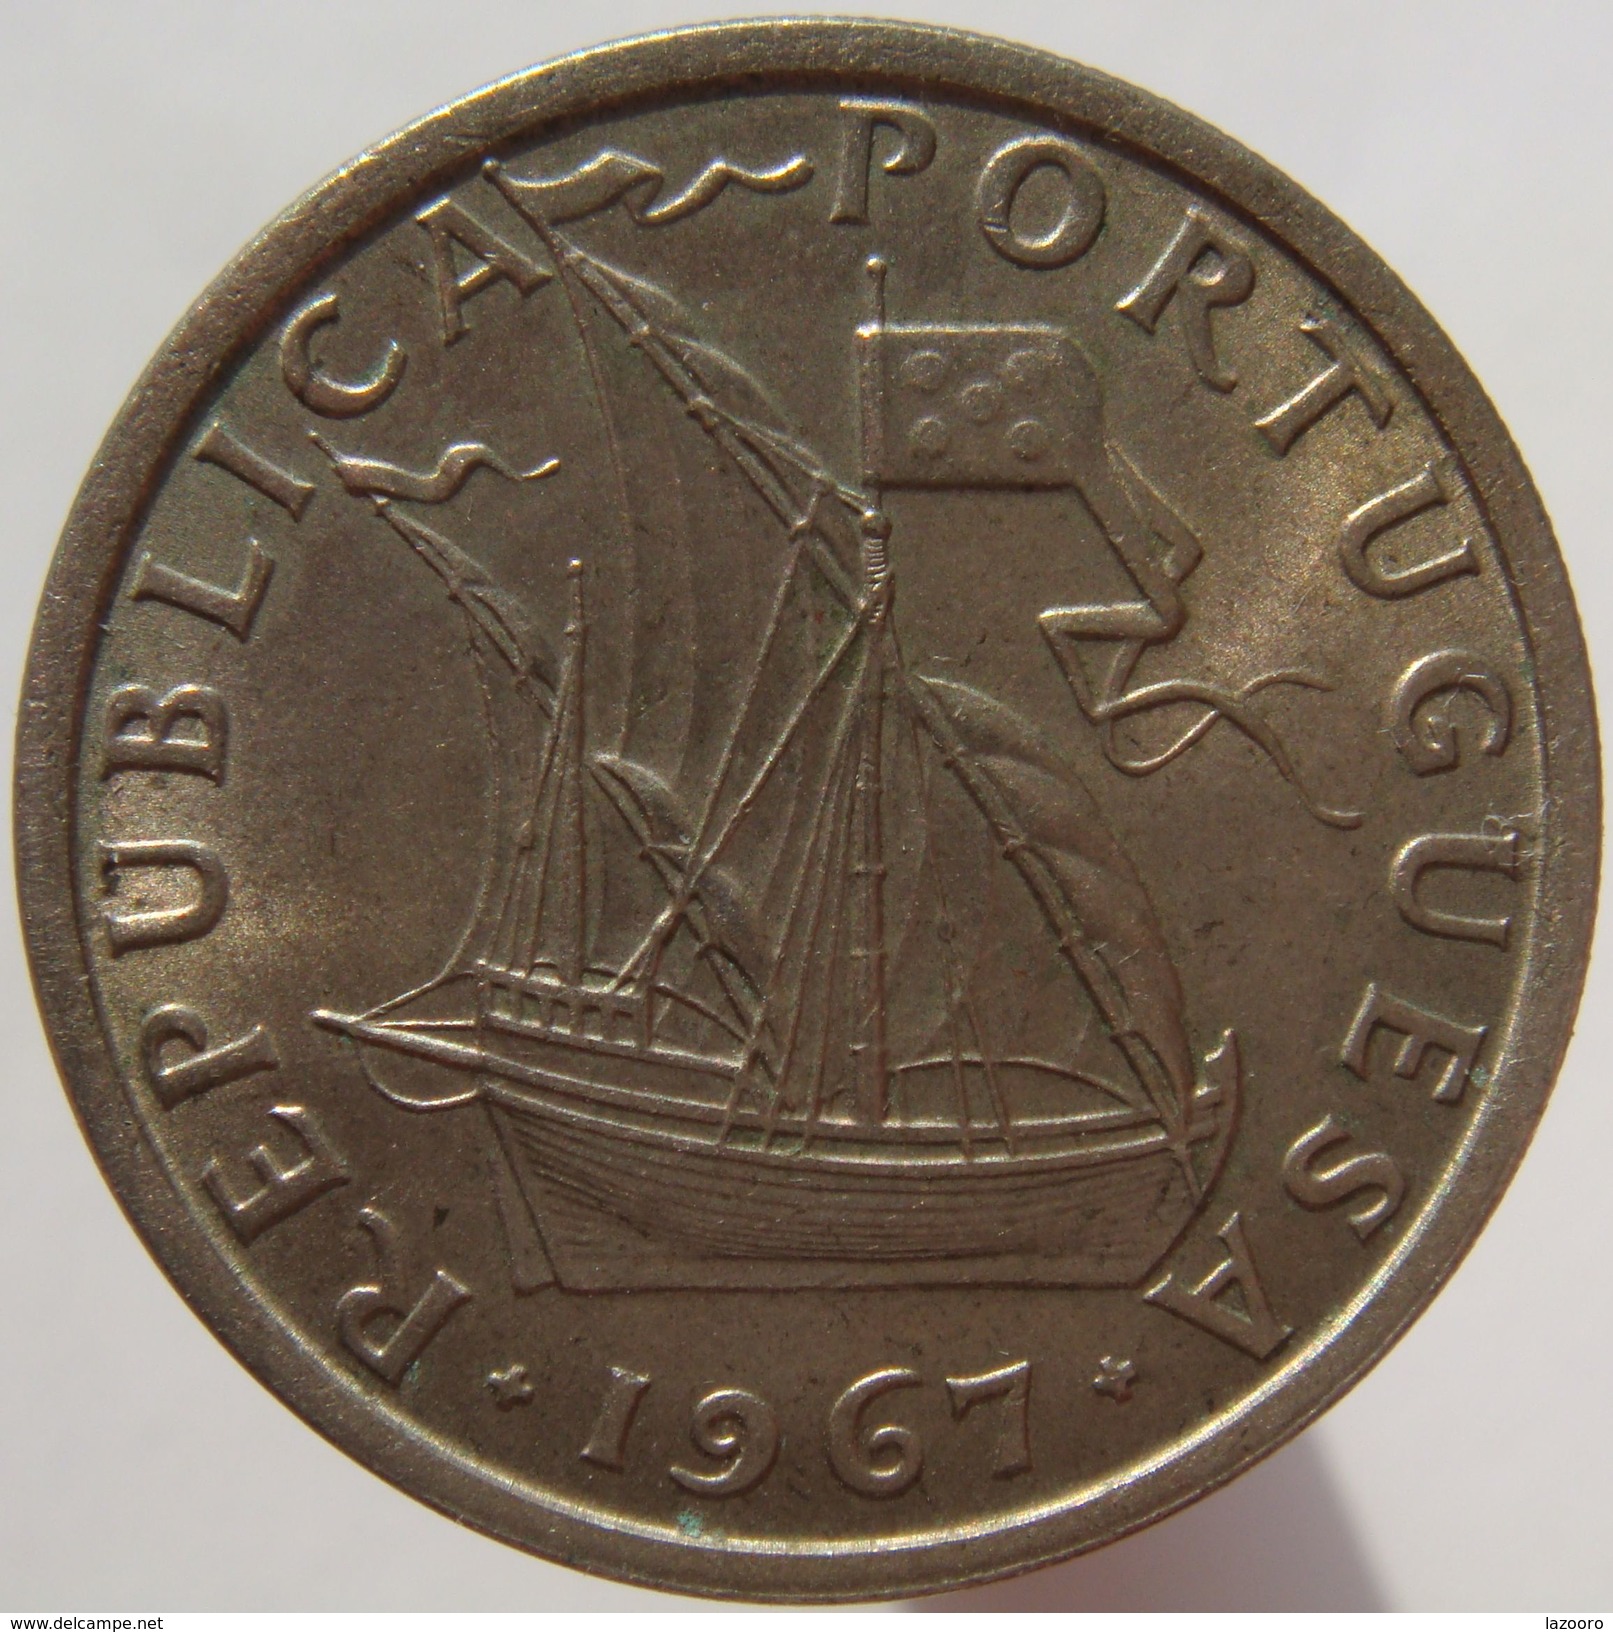 Portugal 5 $ 00 Escudos 1967 - Portugal